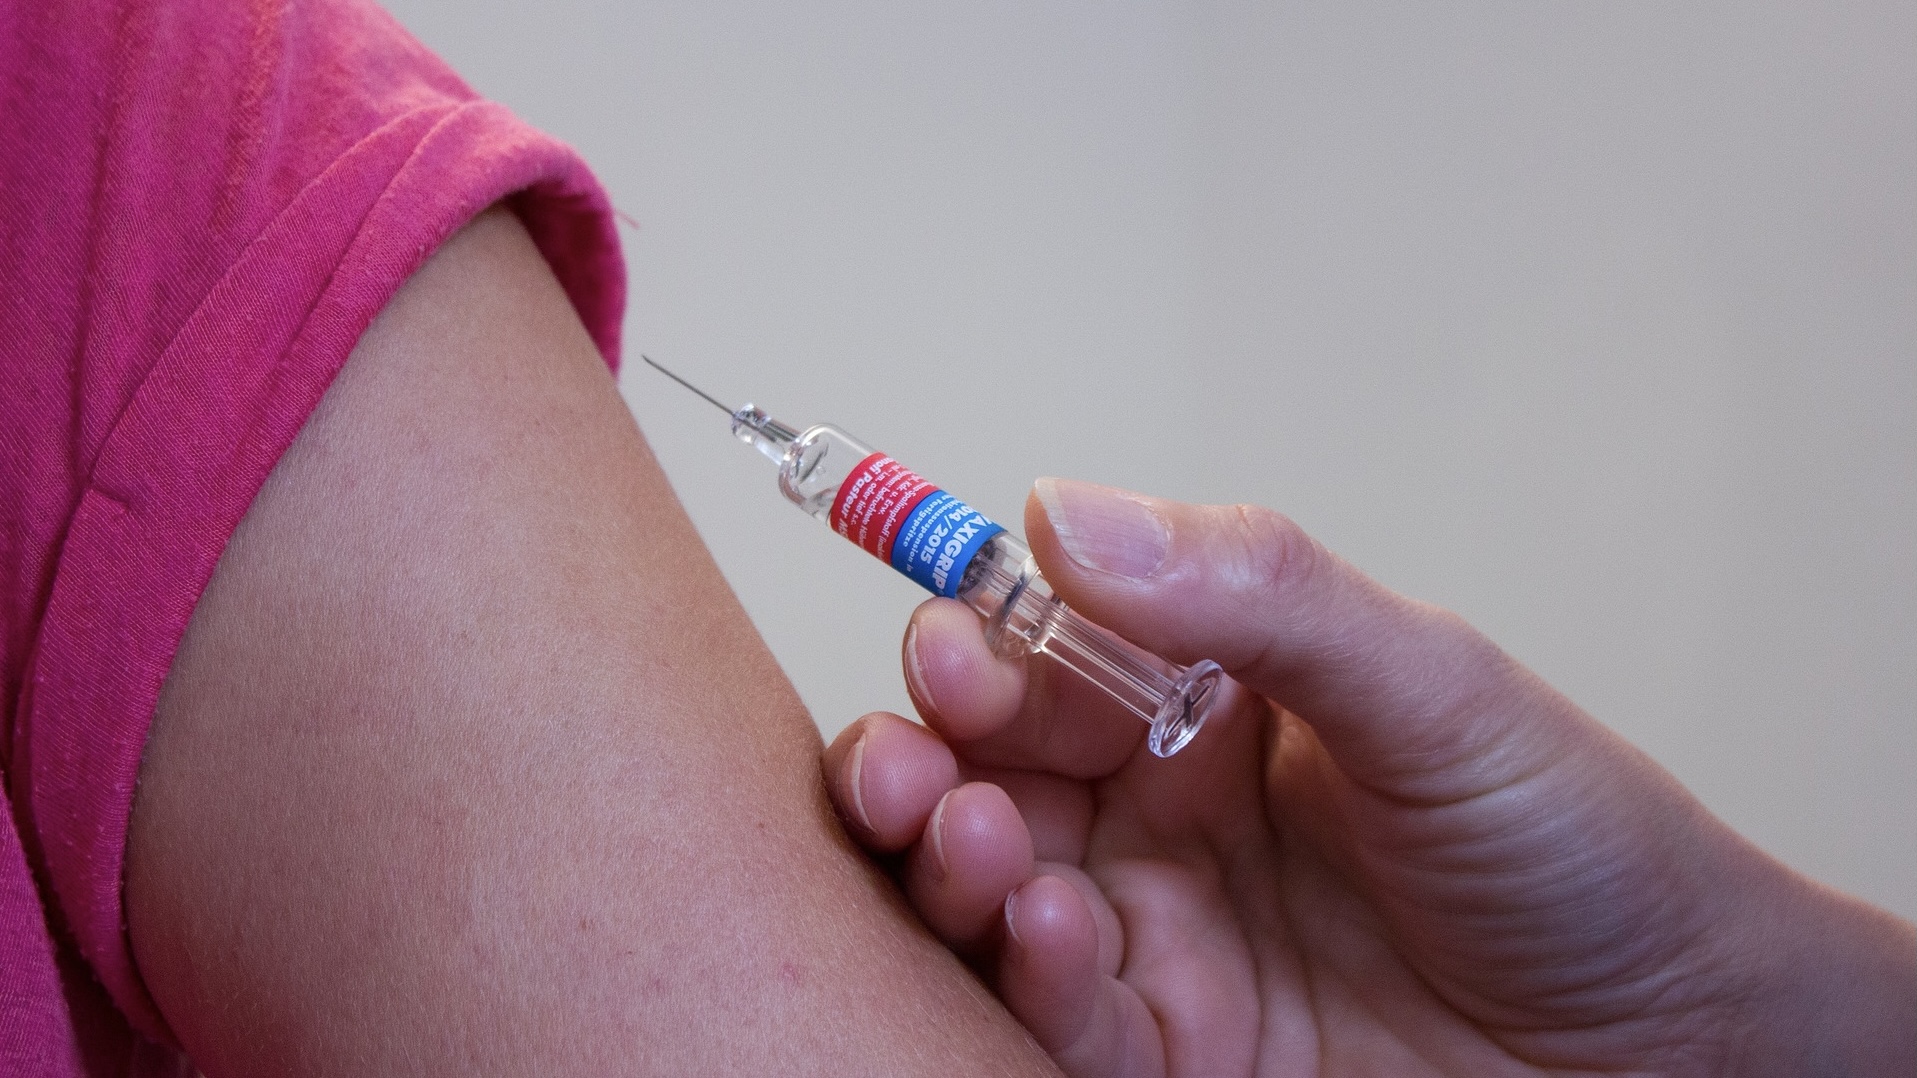 “Vaccino contaminato”: scartate 60 milioni di dosi dalla FDA